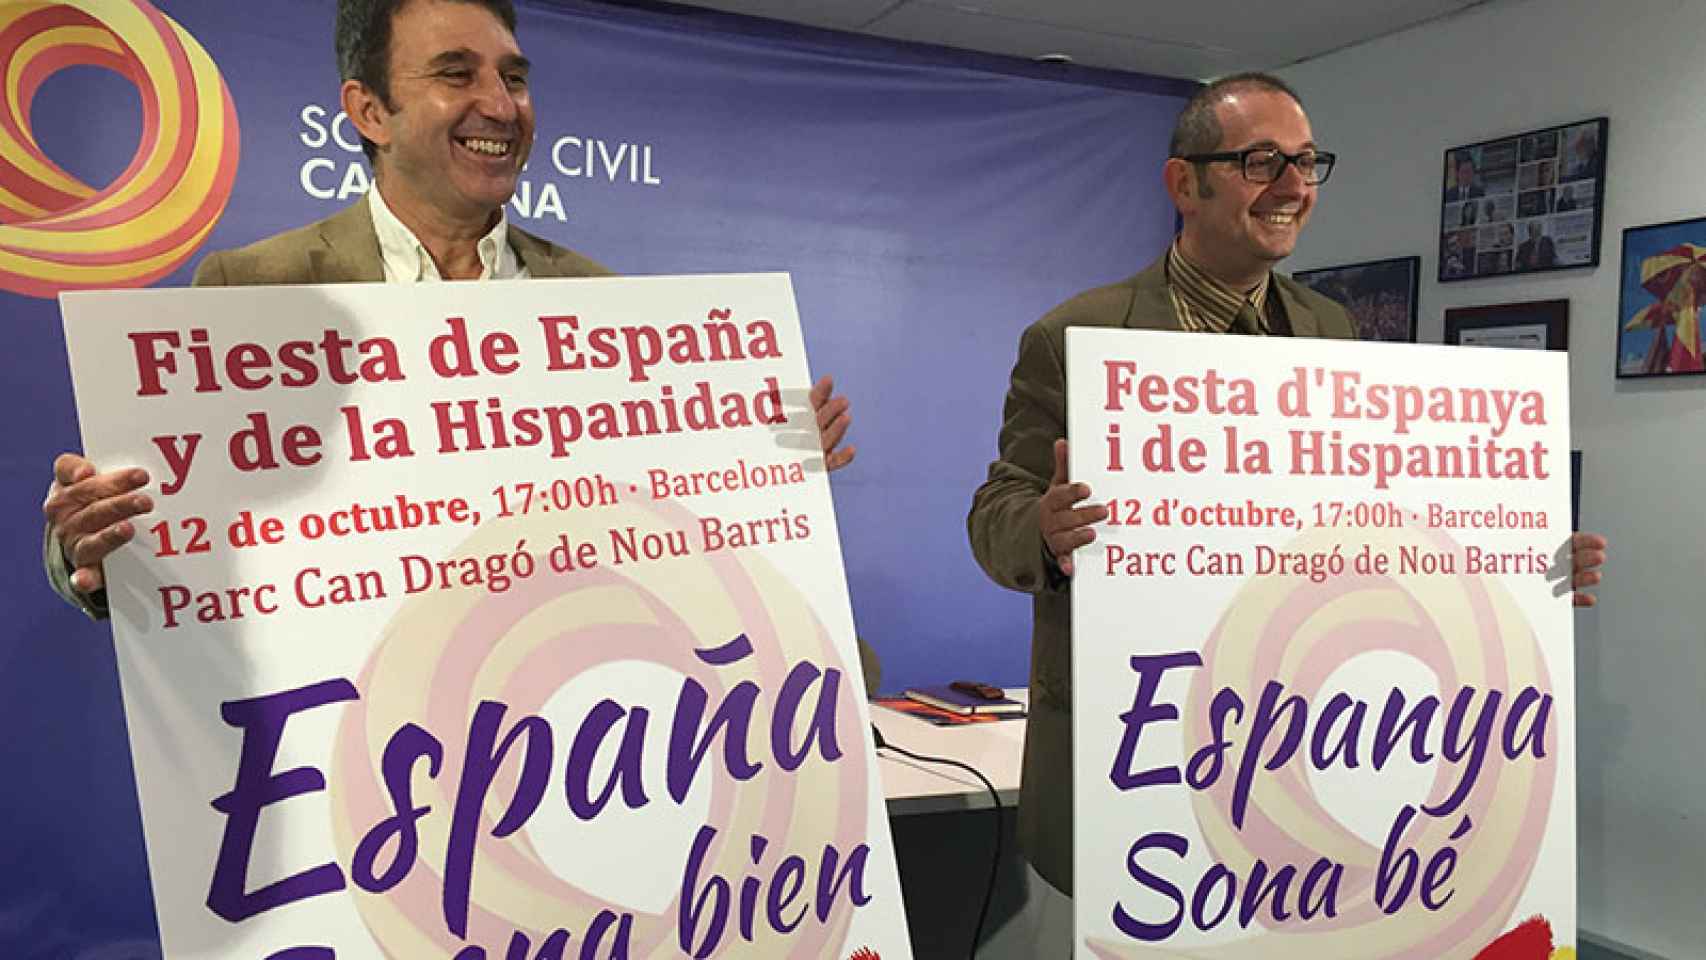 Rafael Arenas y José Domingo presentan los actos de la festividad del 12 de octubre de Sociedad Civil Catalana / CG